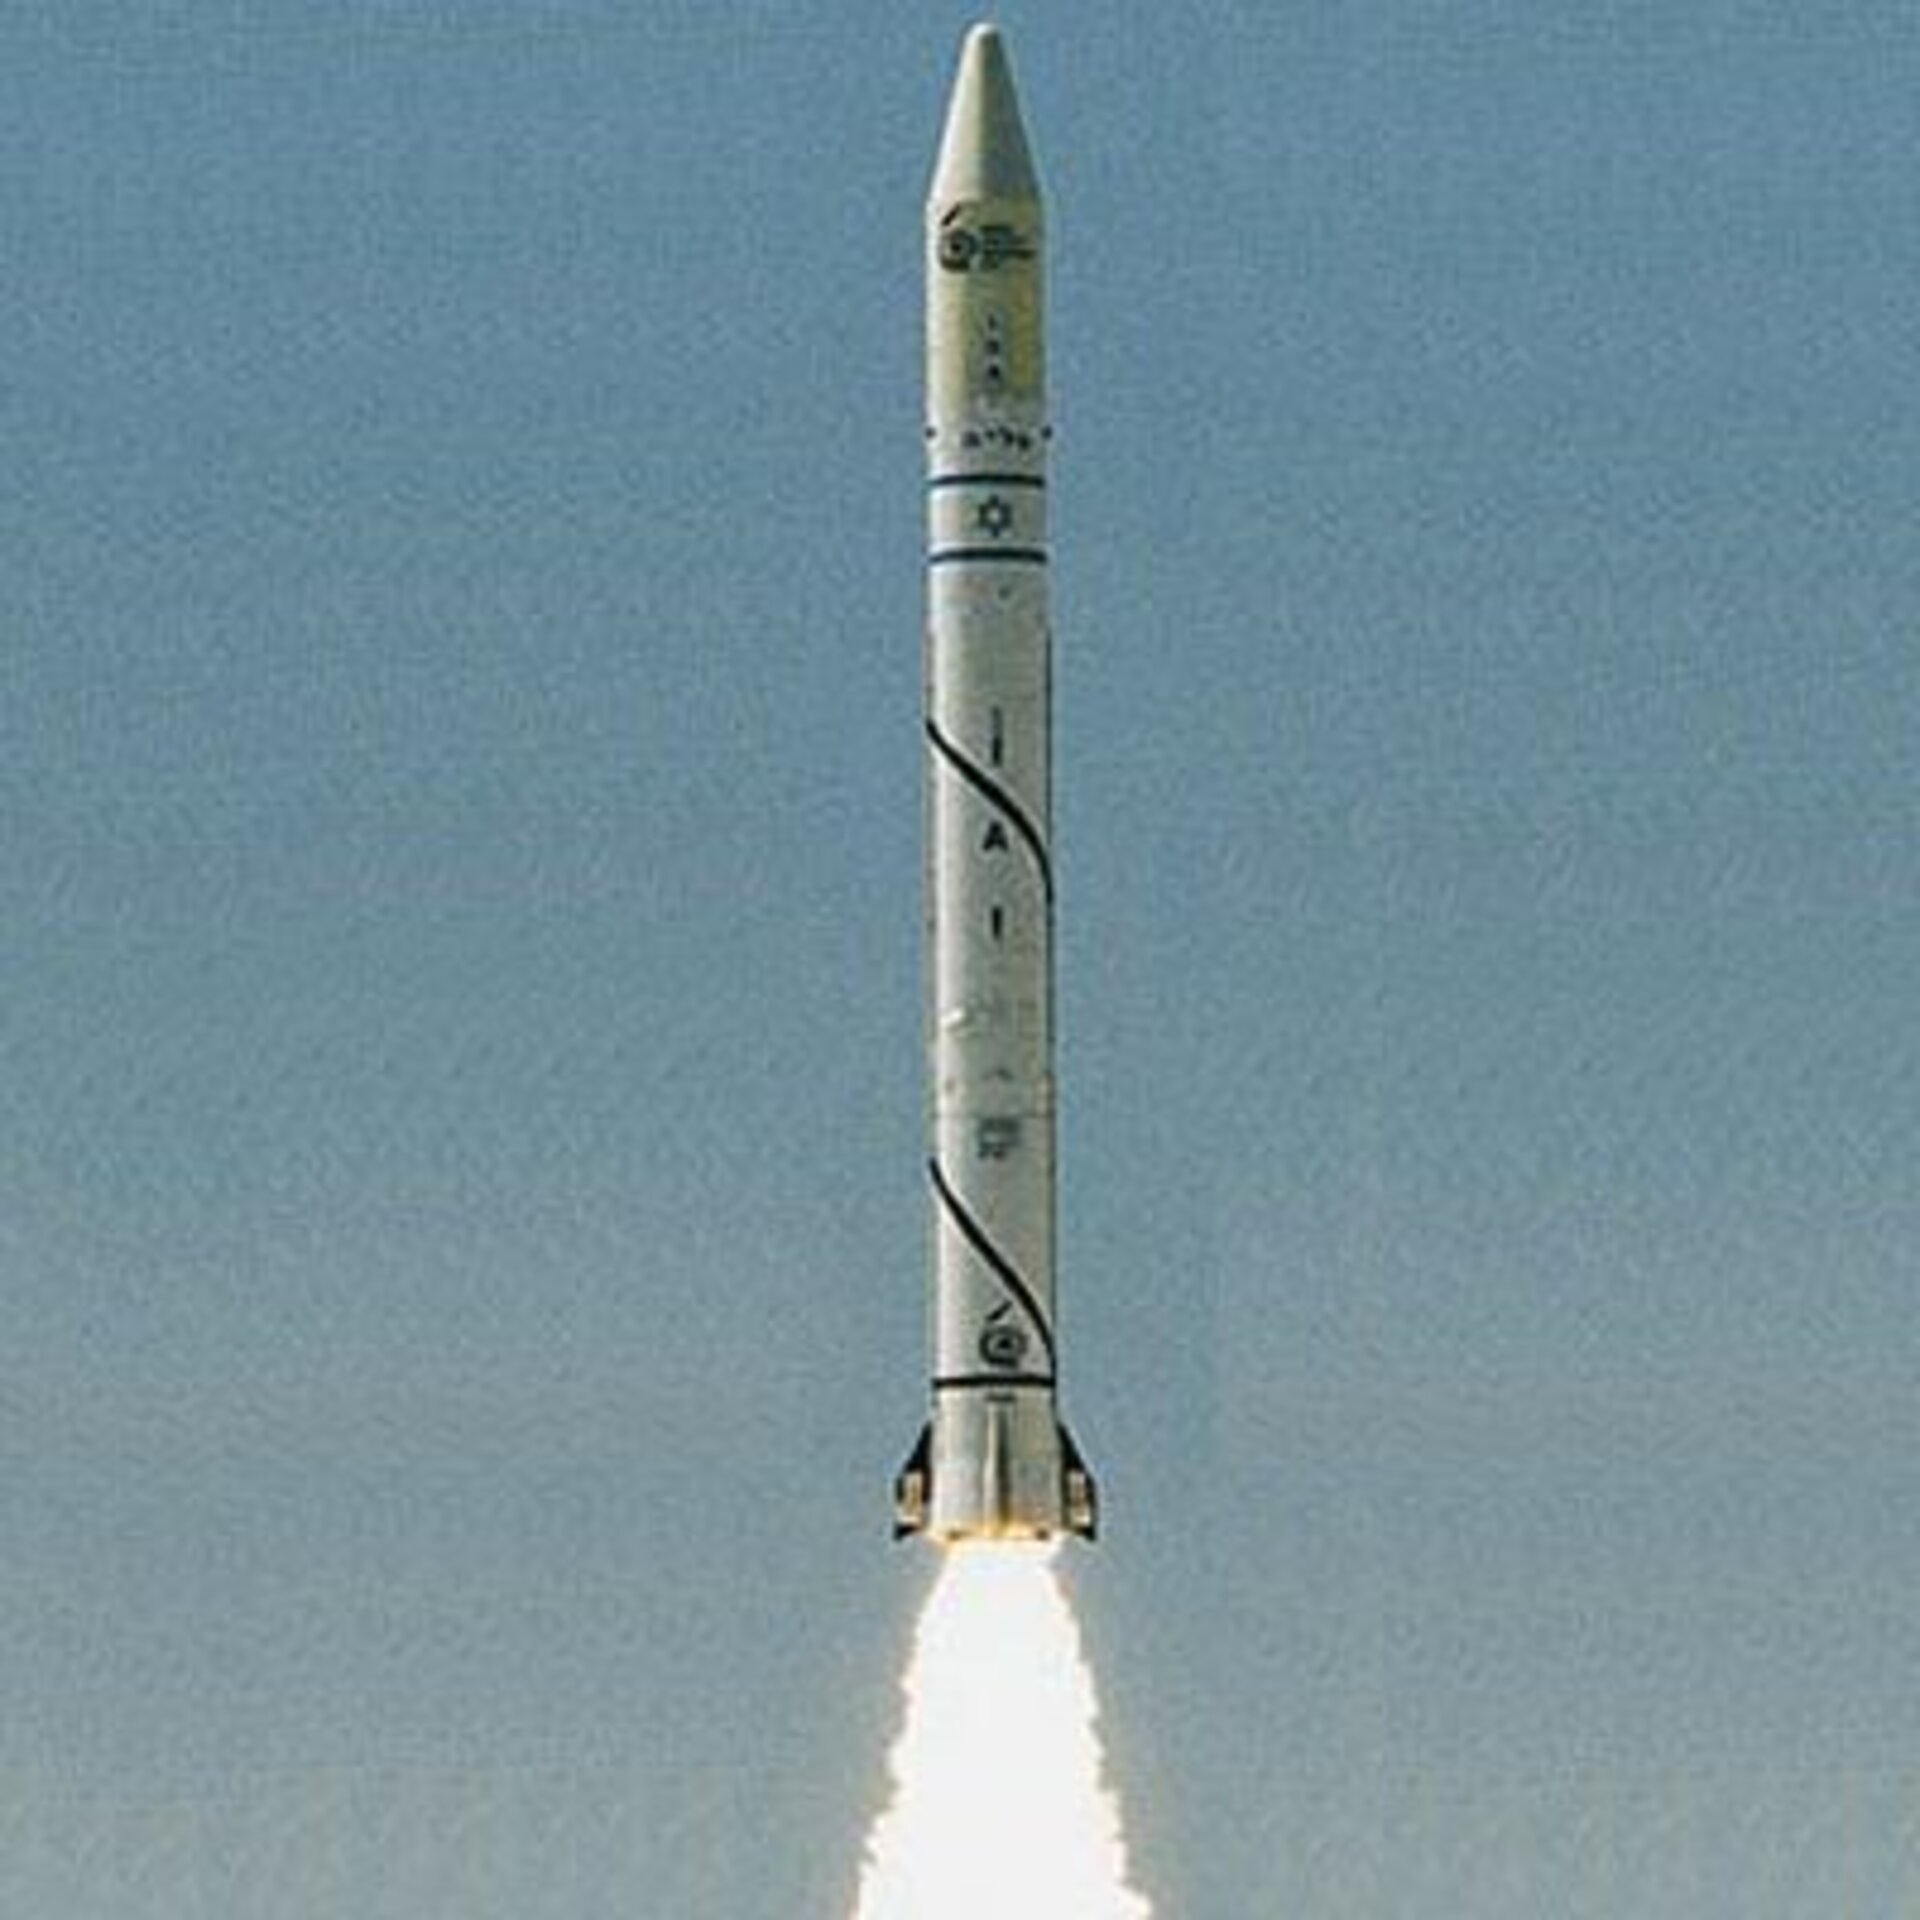 A Shavit rocket launches Ofeq 1